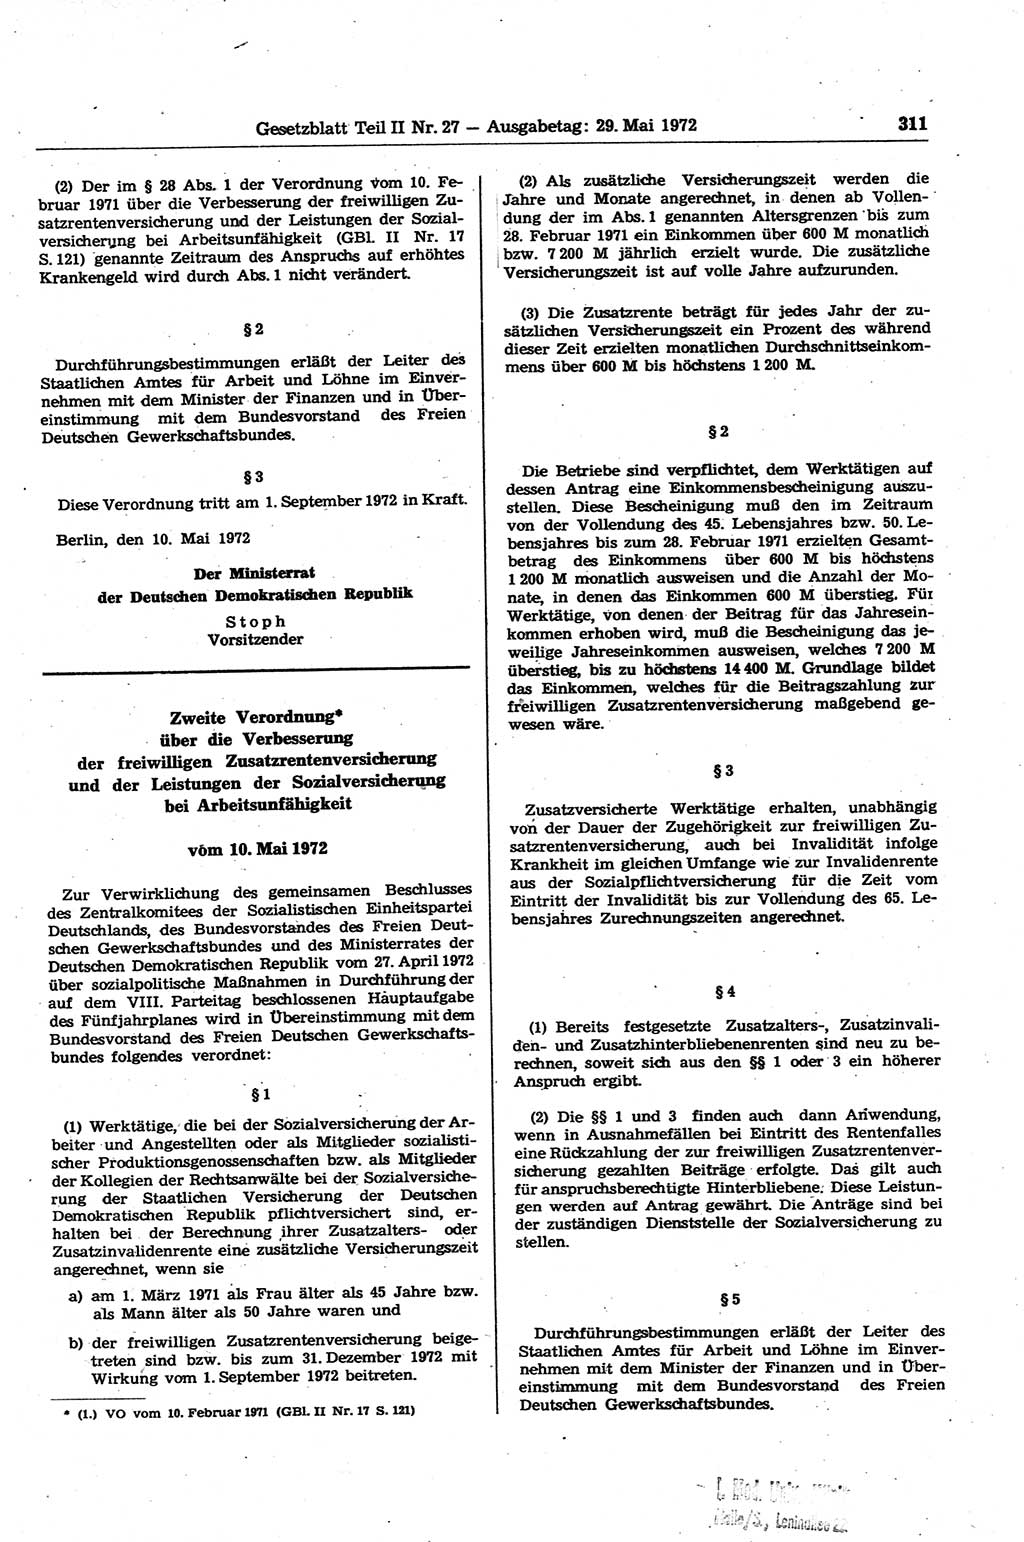 Gesetzblatt (GBl.) der Deutschen Demokratischen Republik (DDR) Teil ⅠⅠ 1972, Seite 311 (GBl. DDR ⅠⅠ 1972, S. 311)